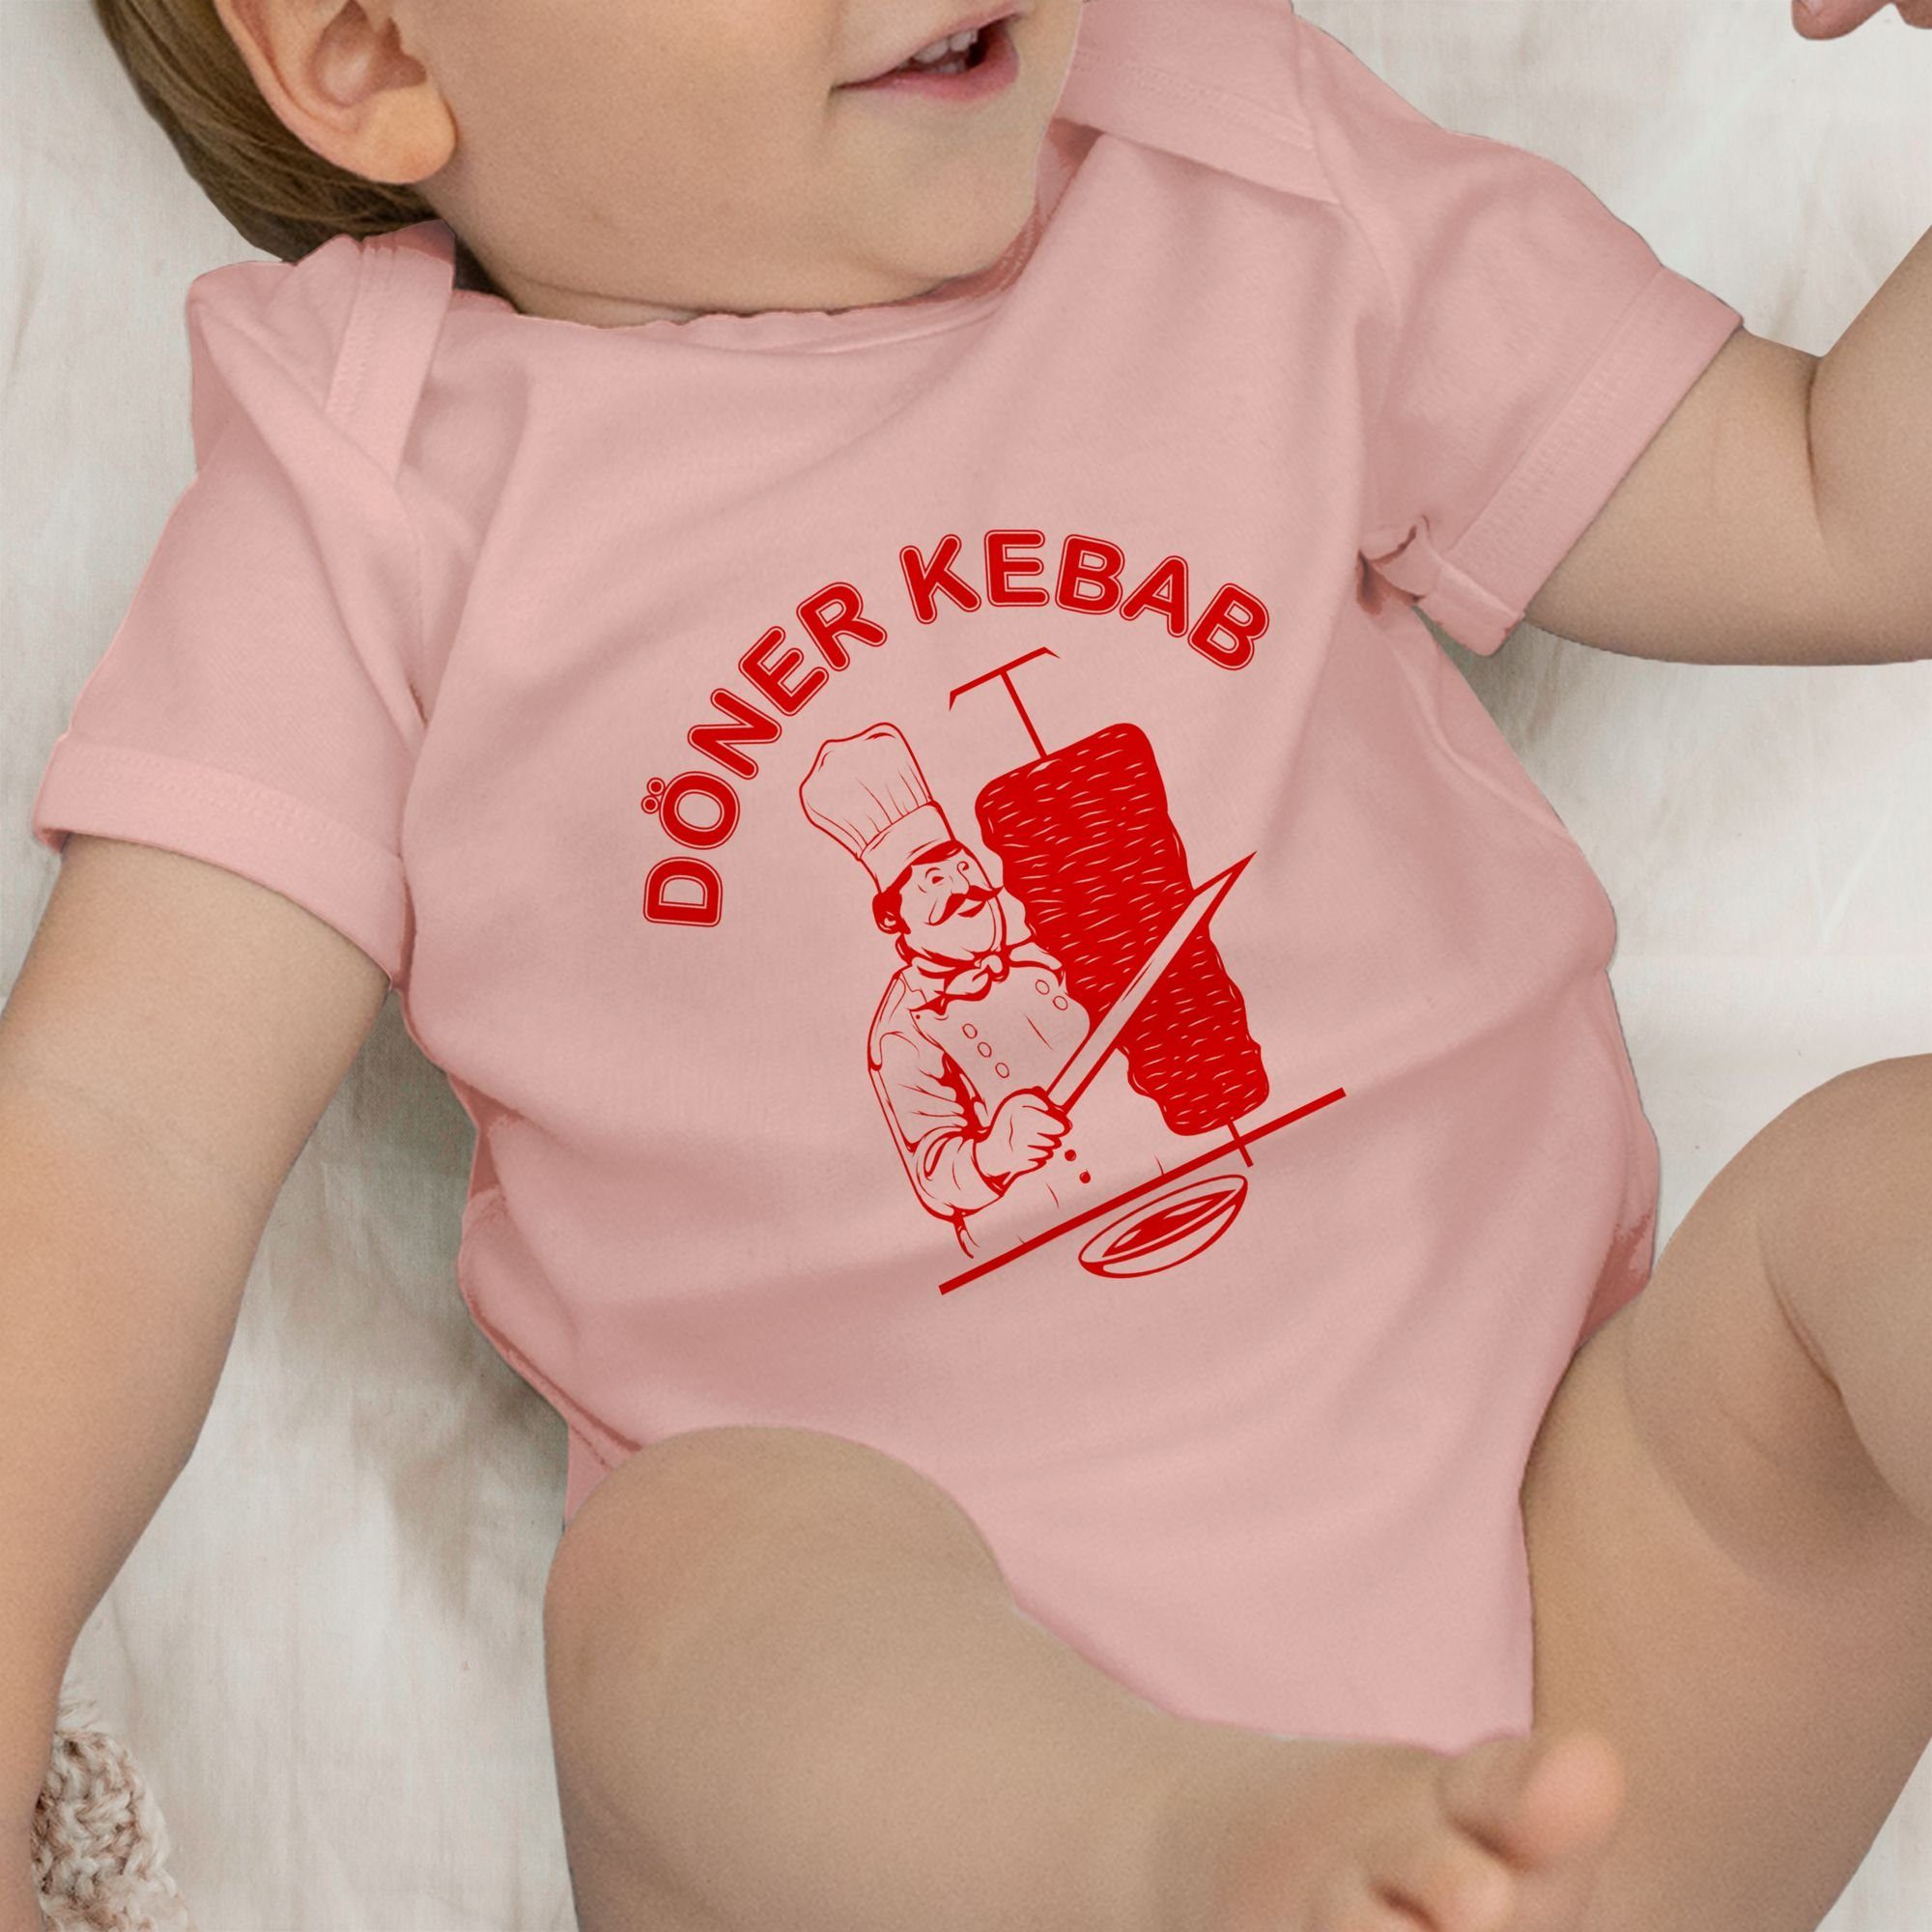 Kebab Original 2 Fasching Karneval Shirtbody Babyrosa Shirtracer & Logo Döner